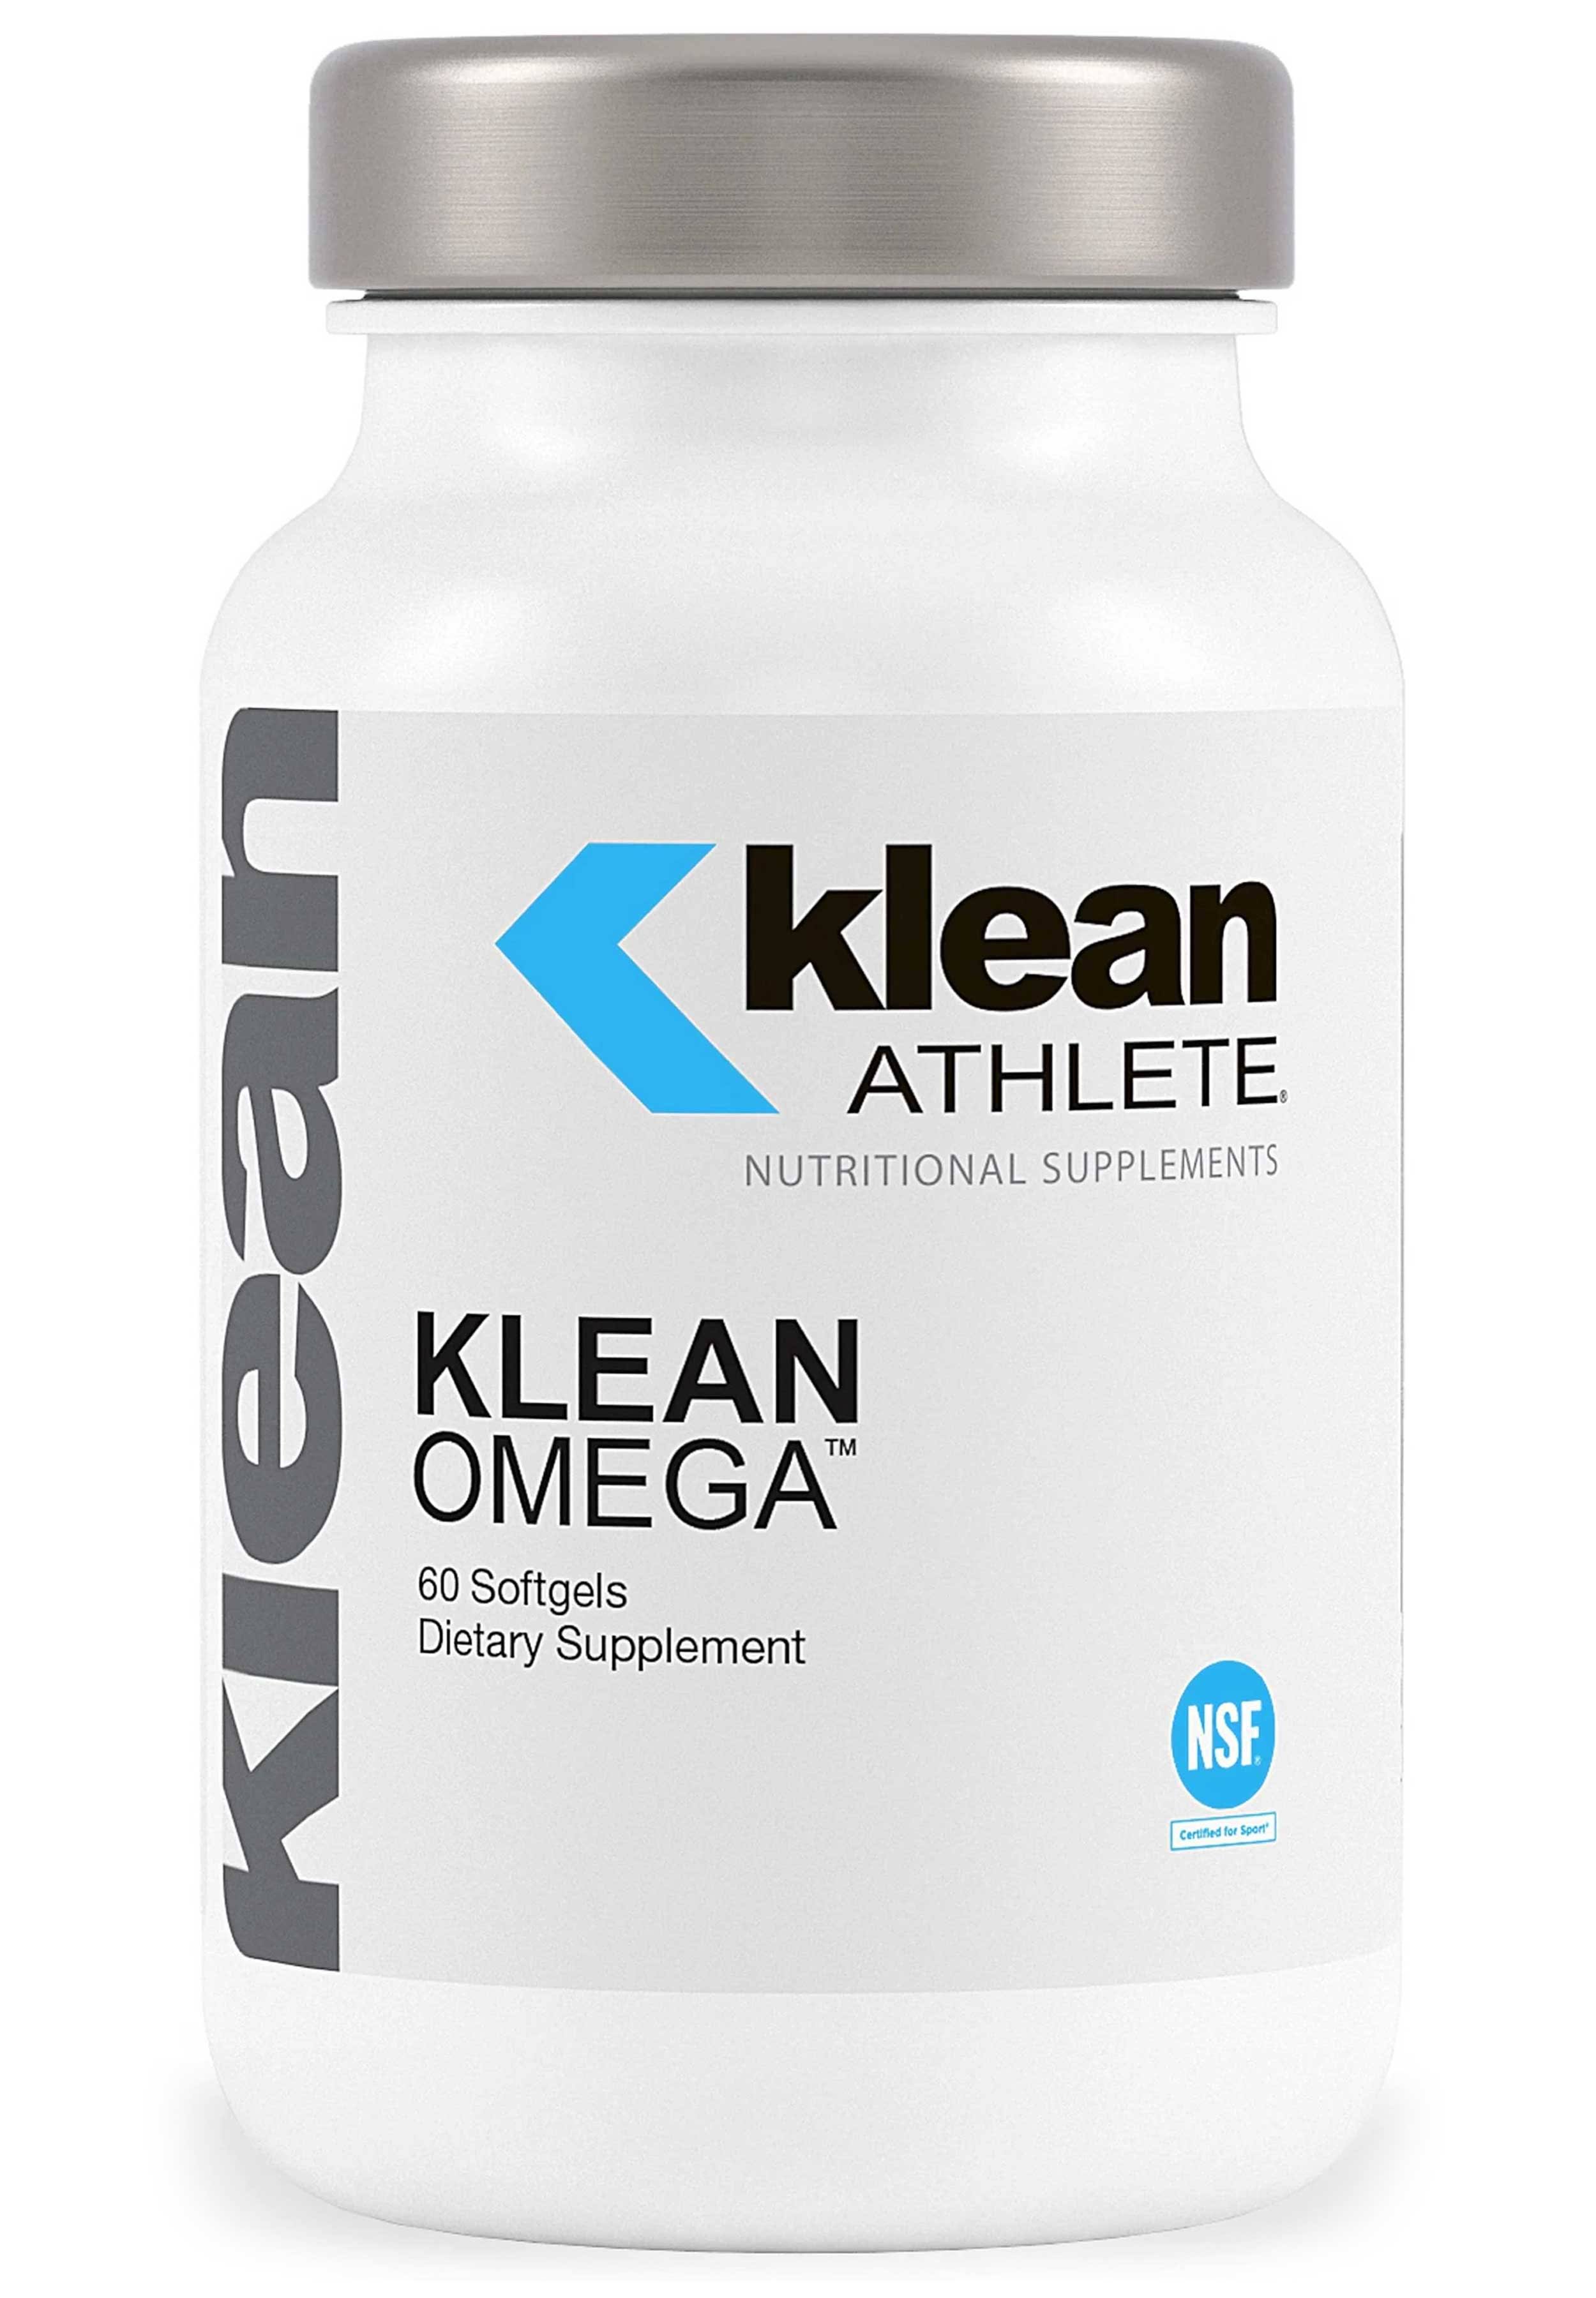 Klean Athlete Klean Omega Supplement - 60 Softgels